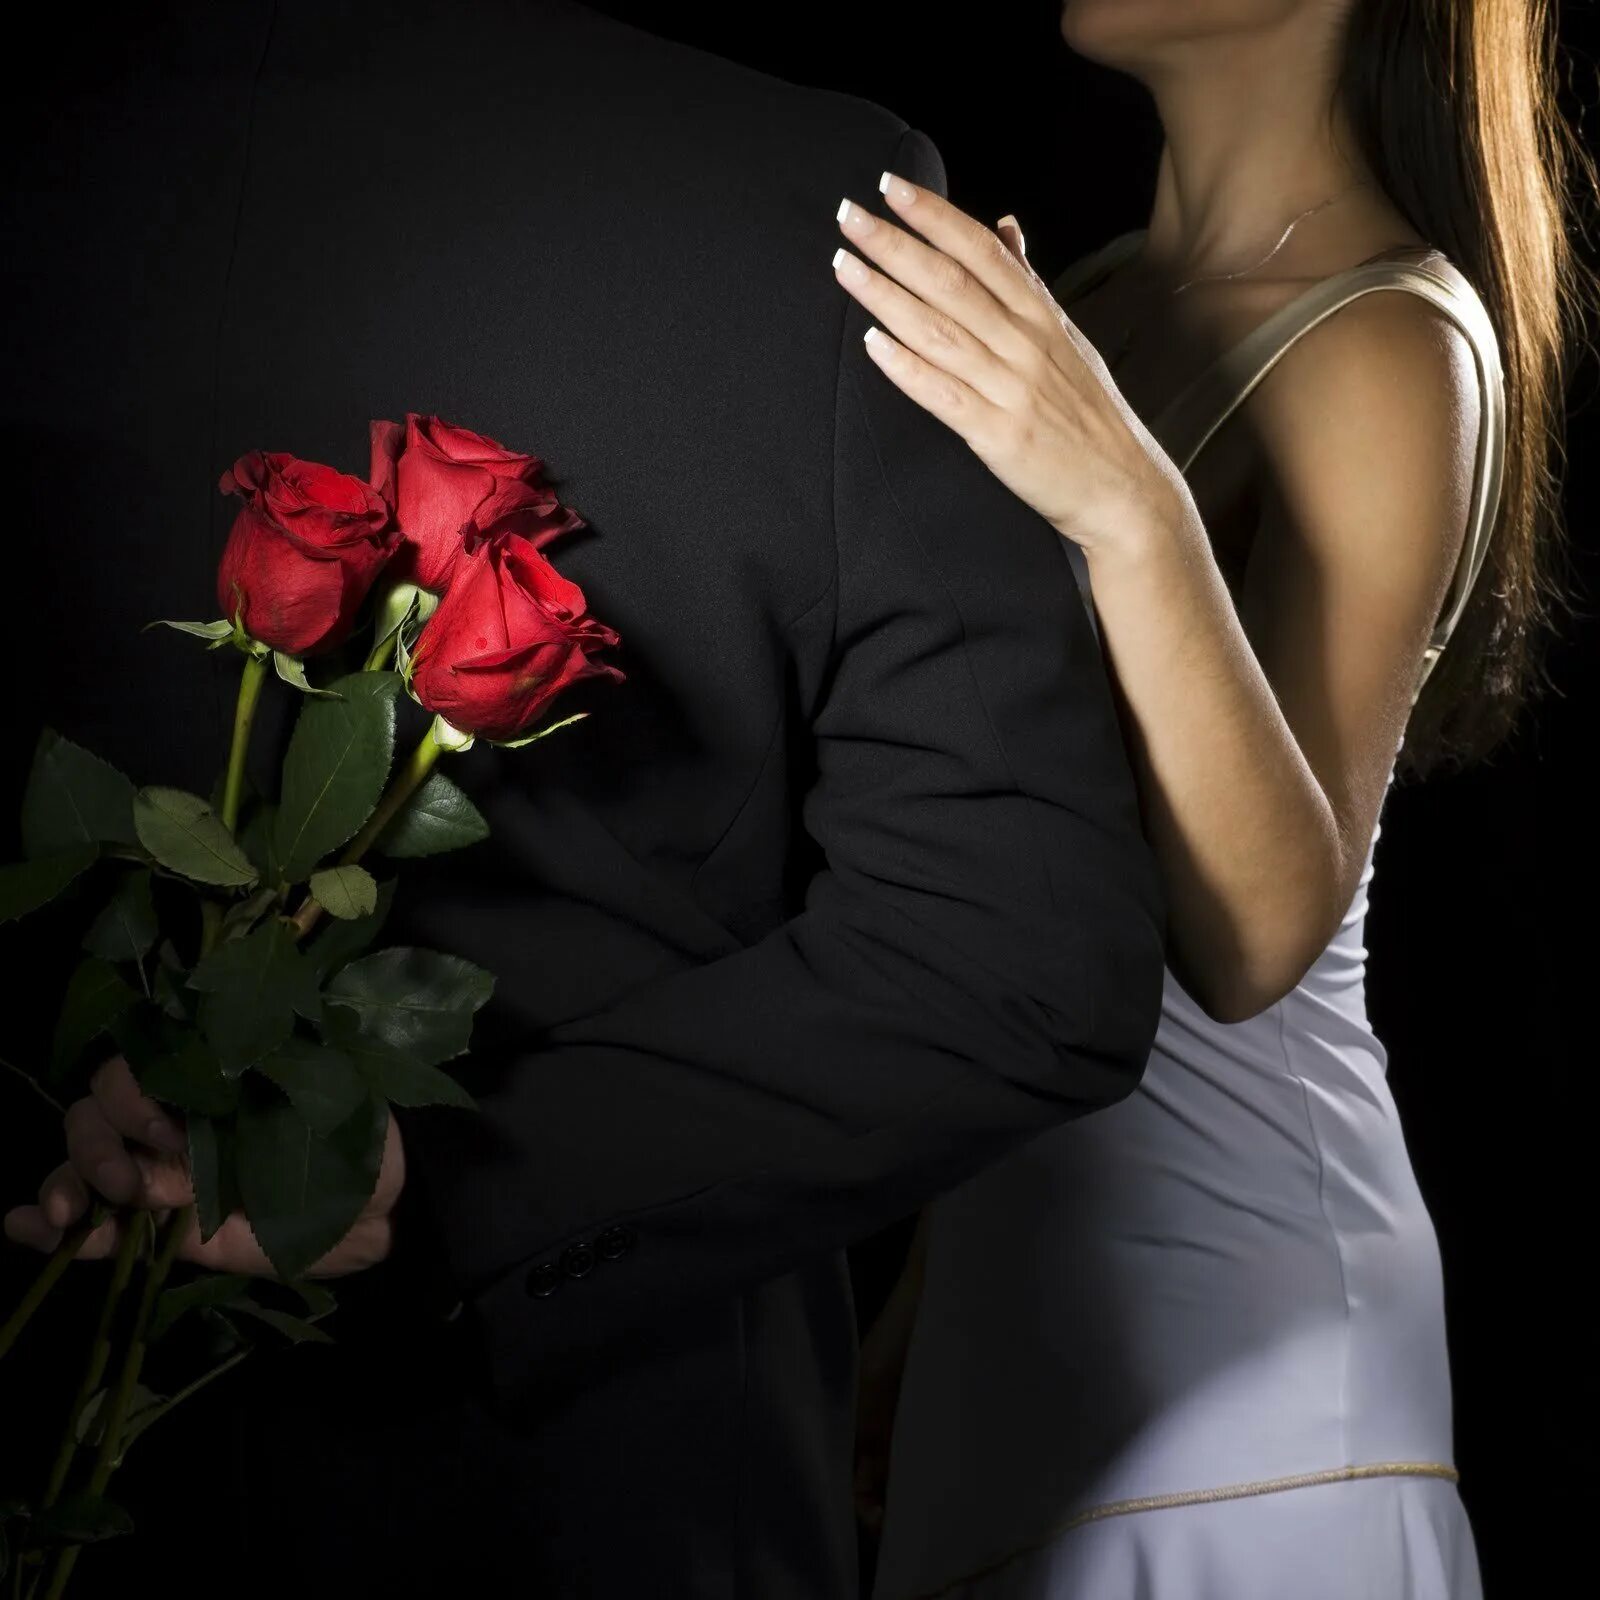 Цвет романтики. Любимая женщина. Мужчина и женщина с розой. Парень и девушка с розами. Парень девушка цветы.